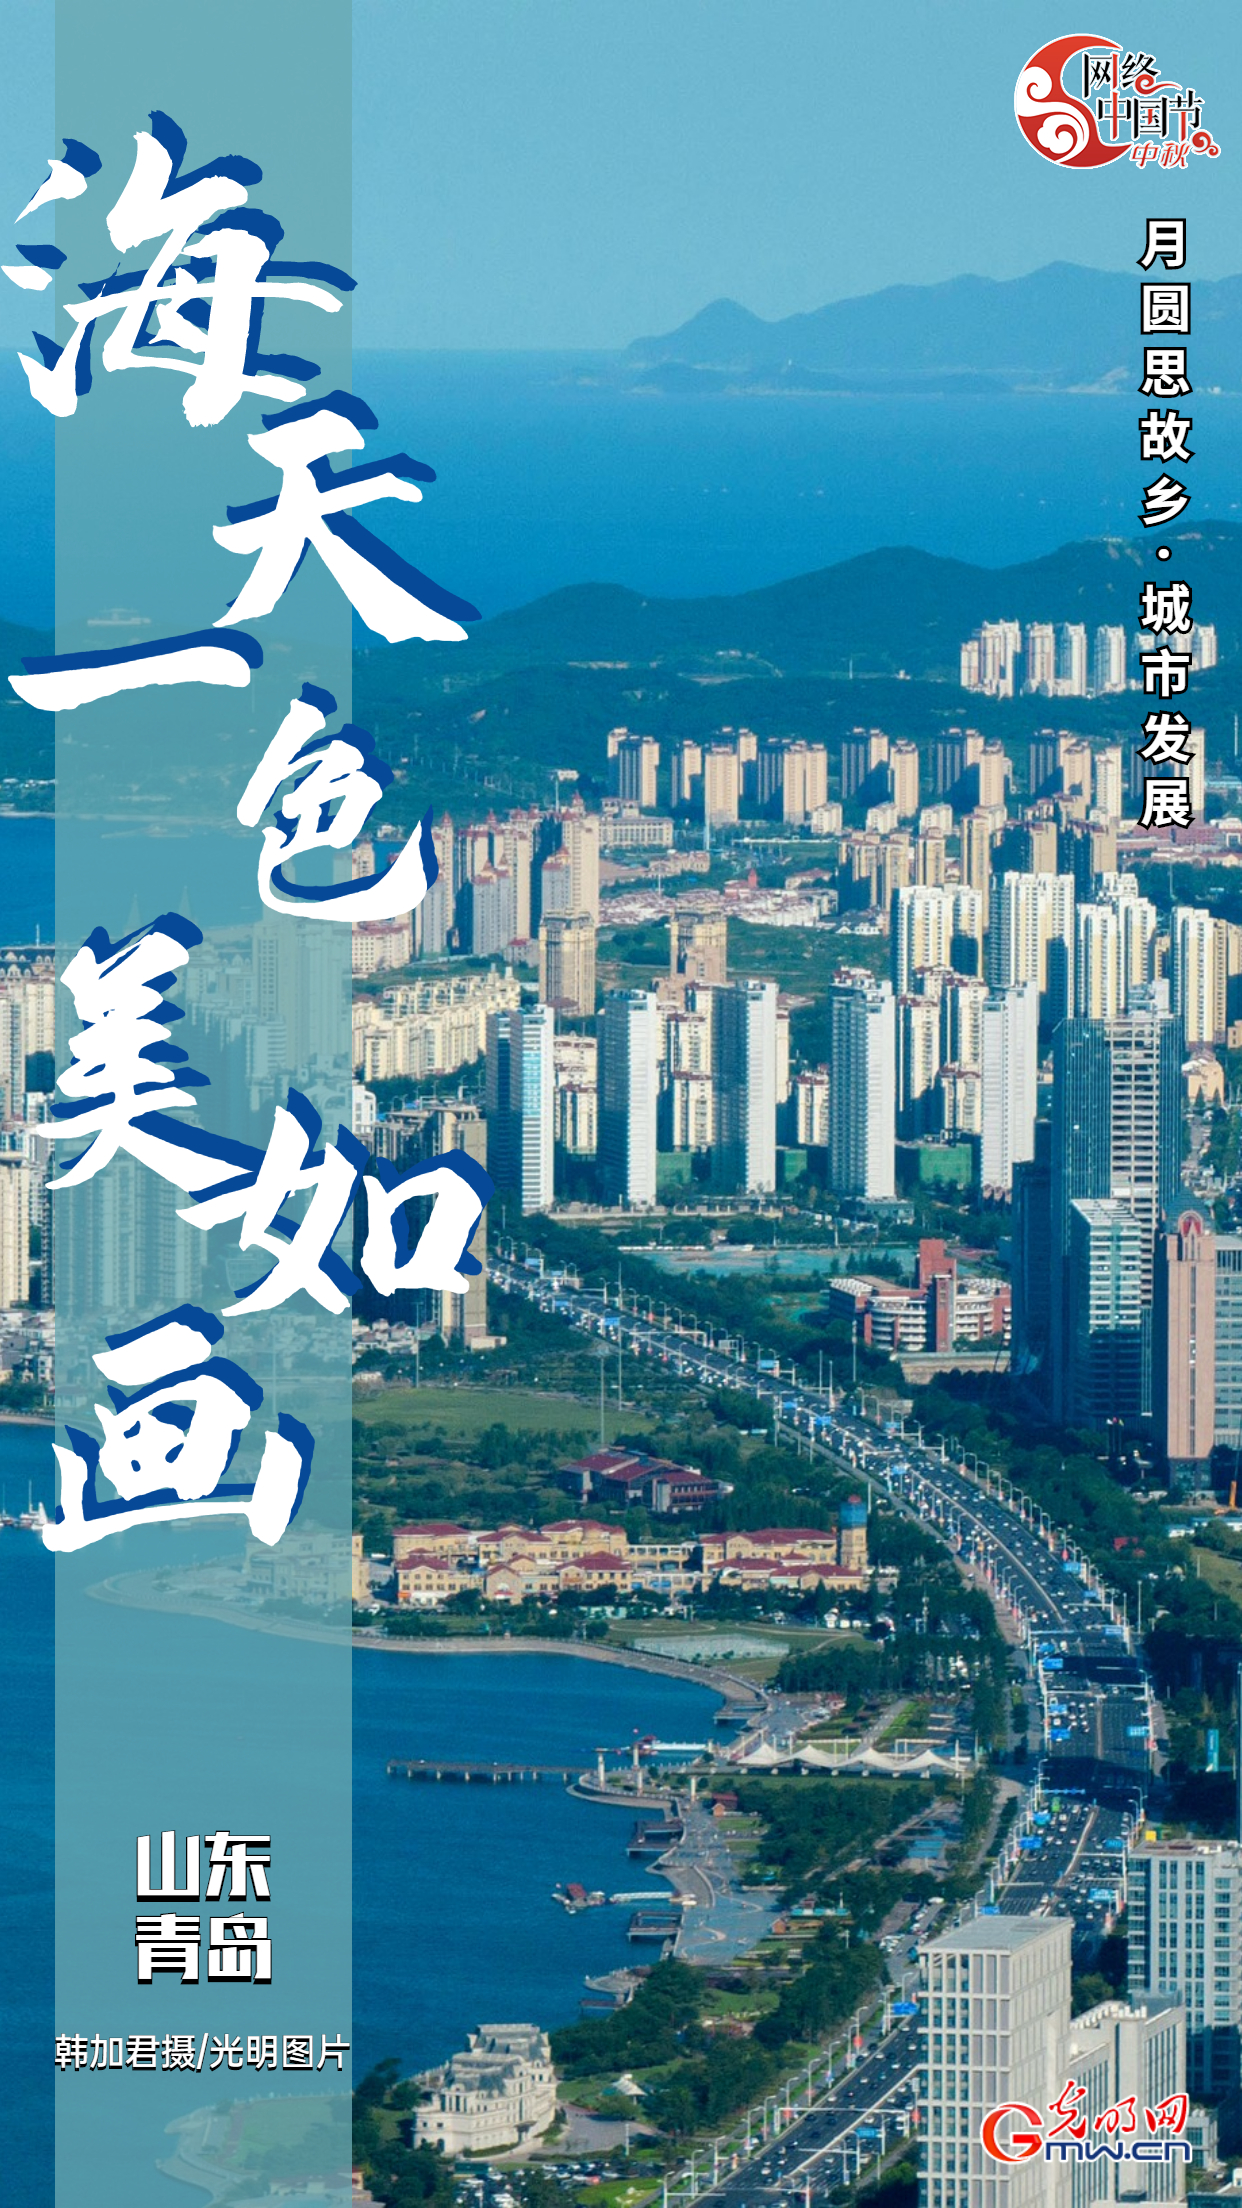 【网络中国节·月圆思故乡】城市发展篇：宜居、开放、生机盎然的中国城市新样貌